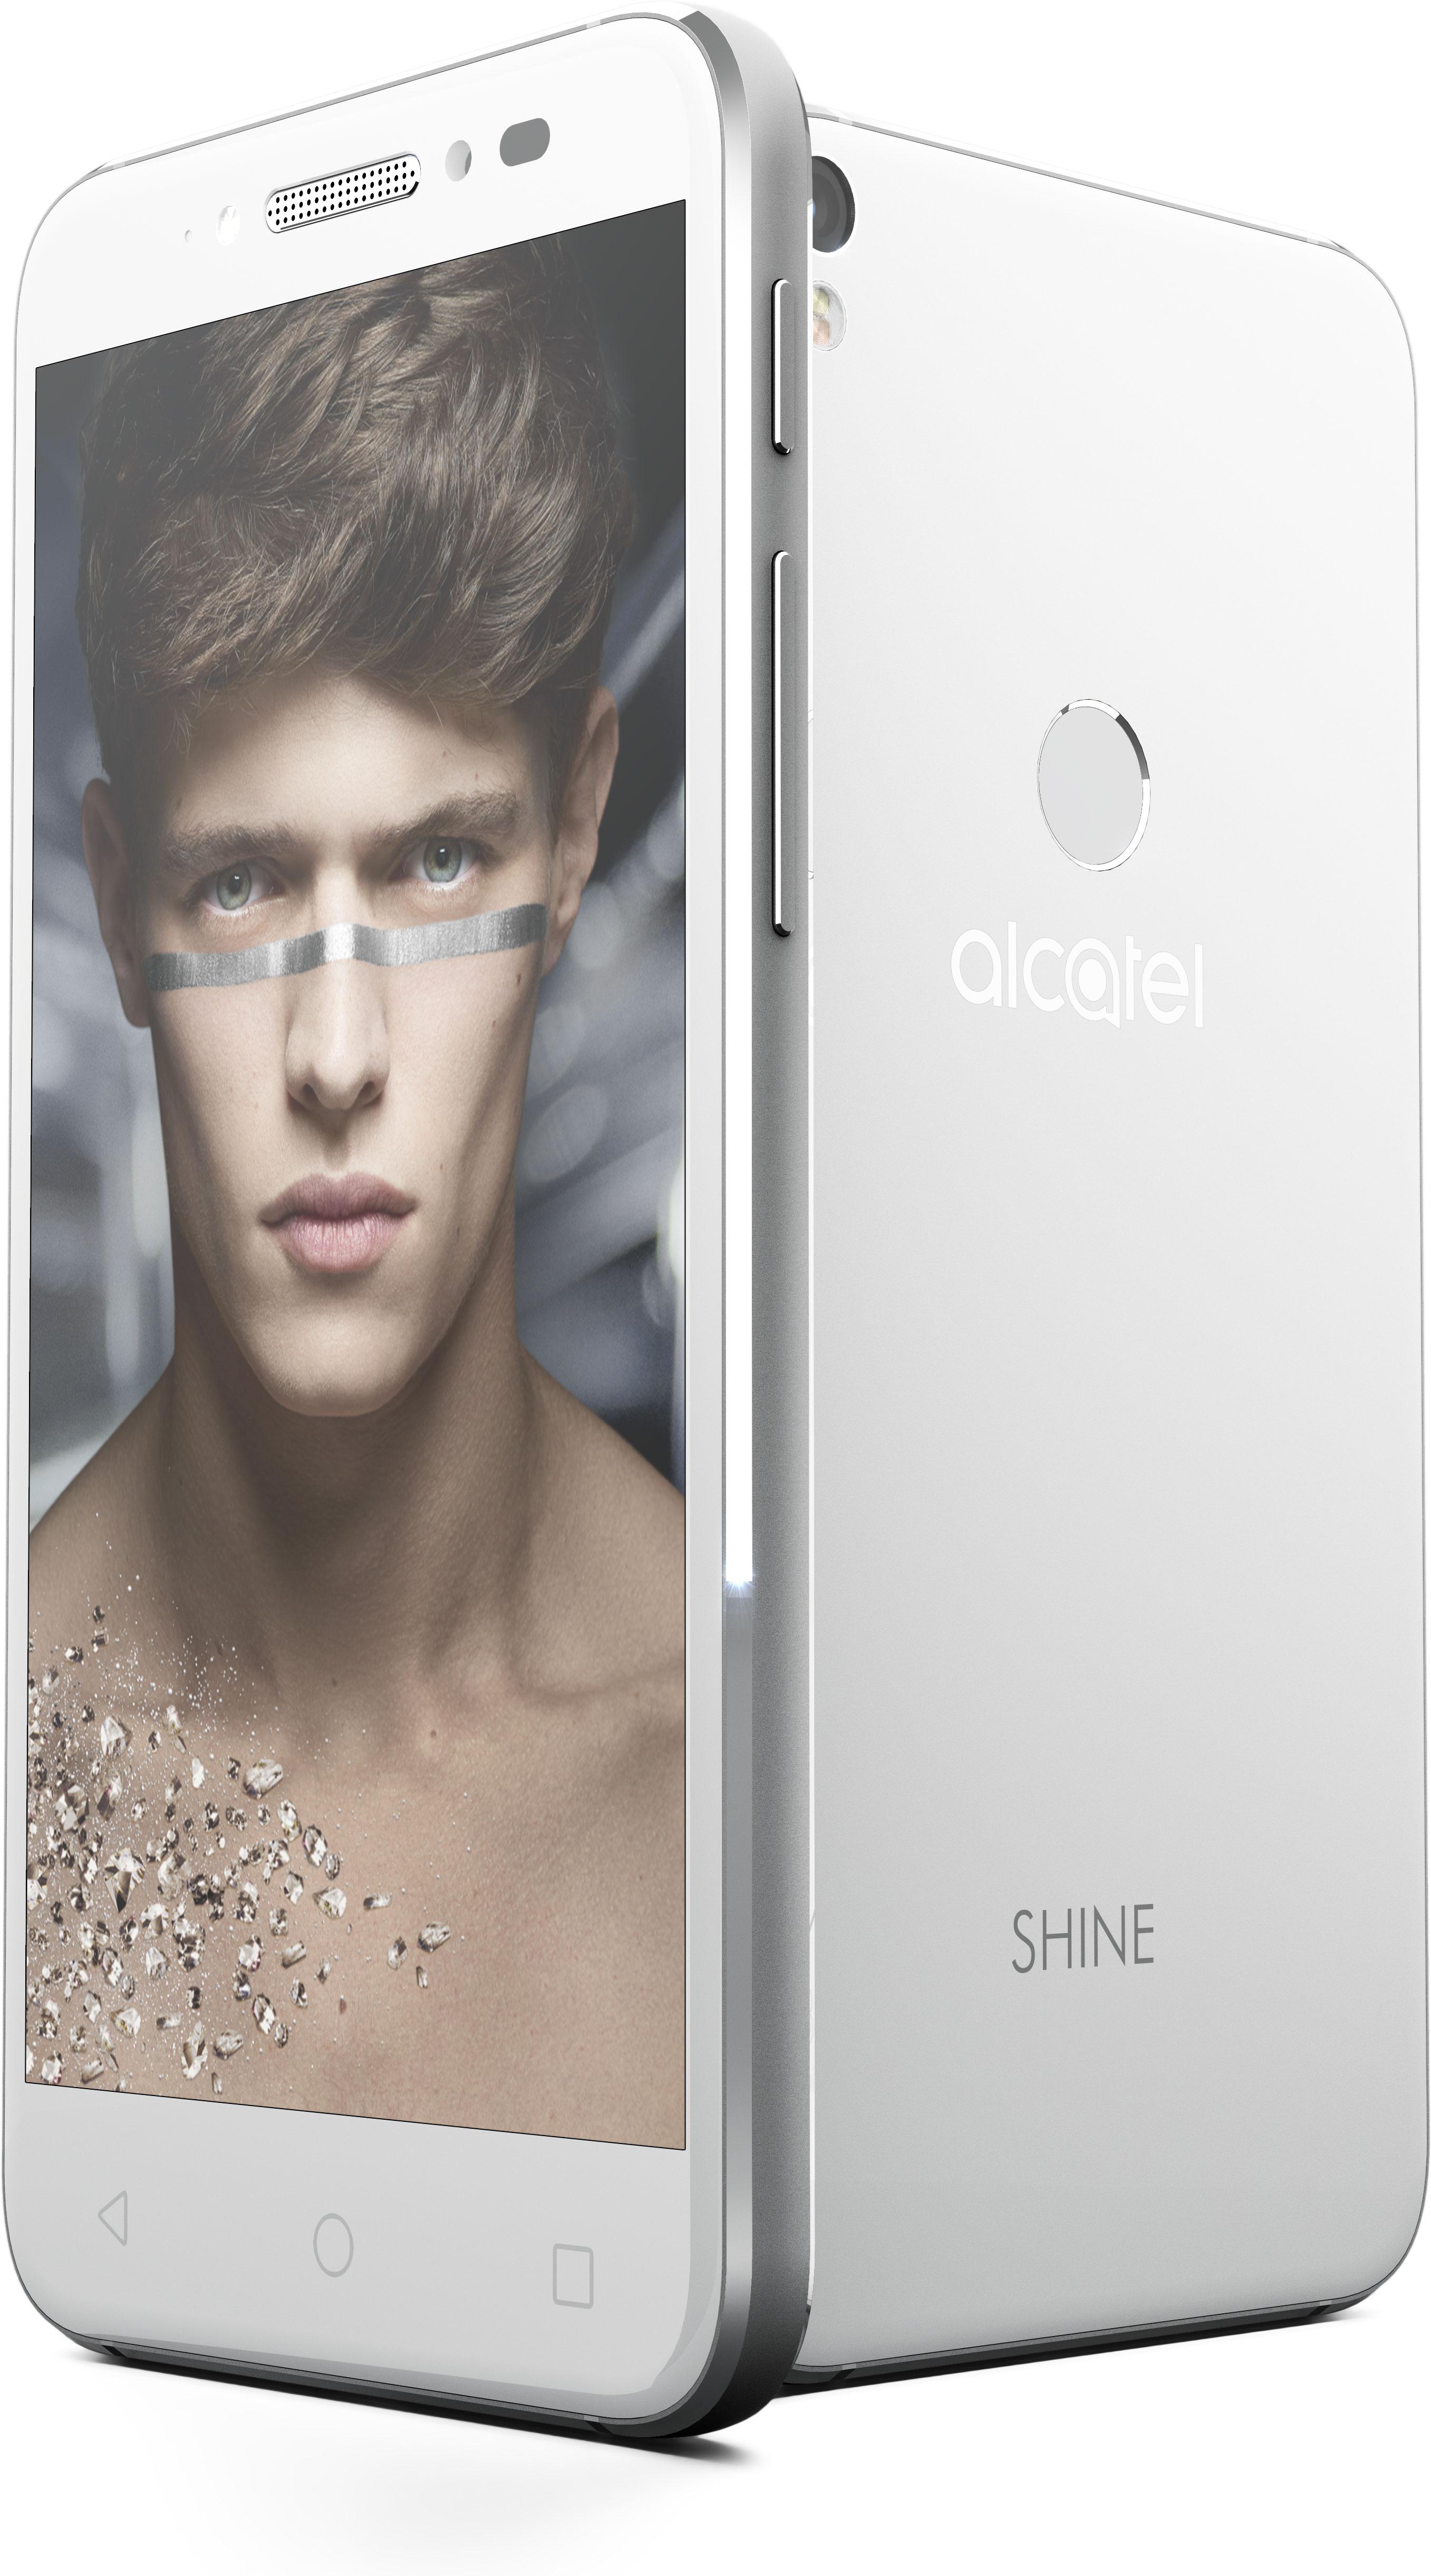 Alcatel Shine gris con chico en pantalla